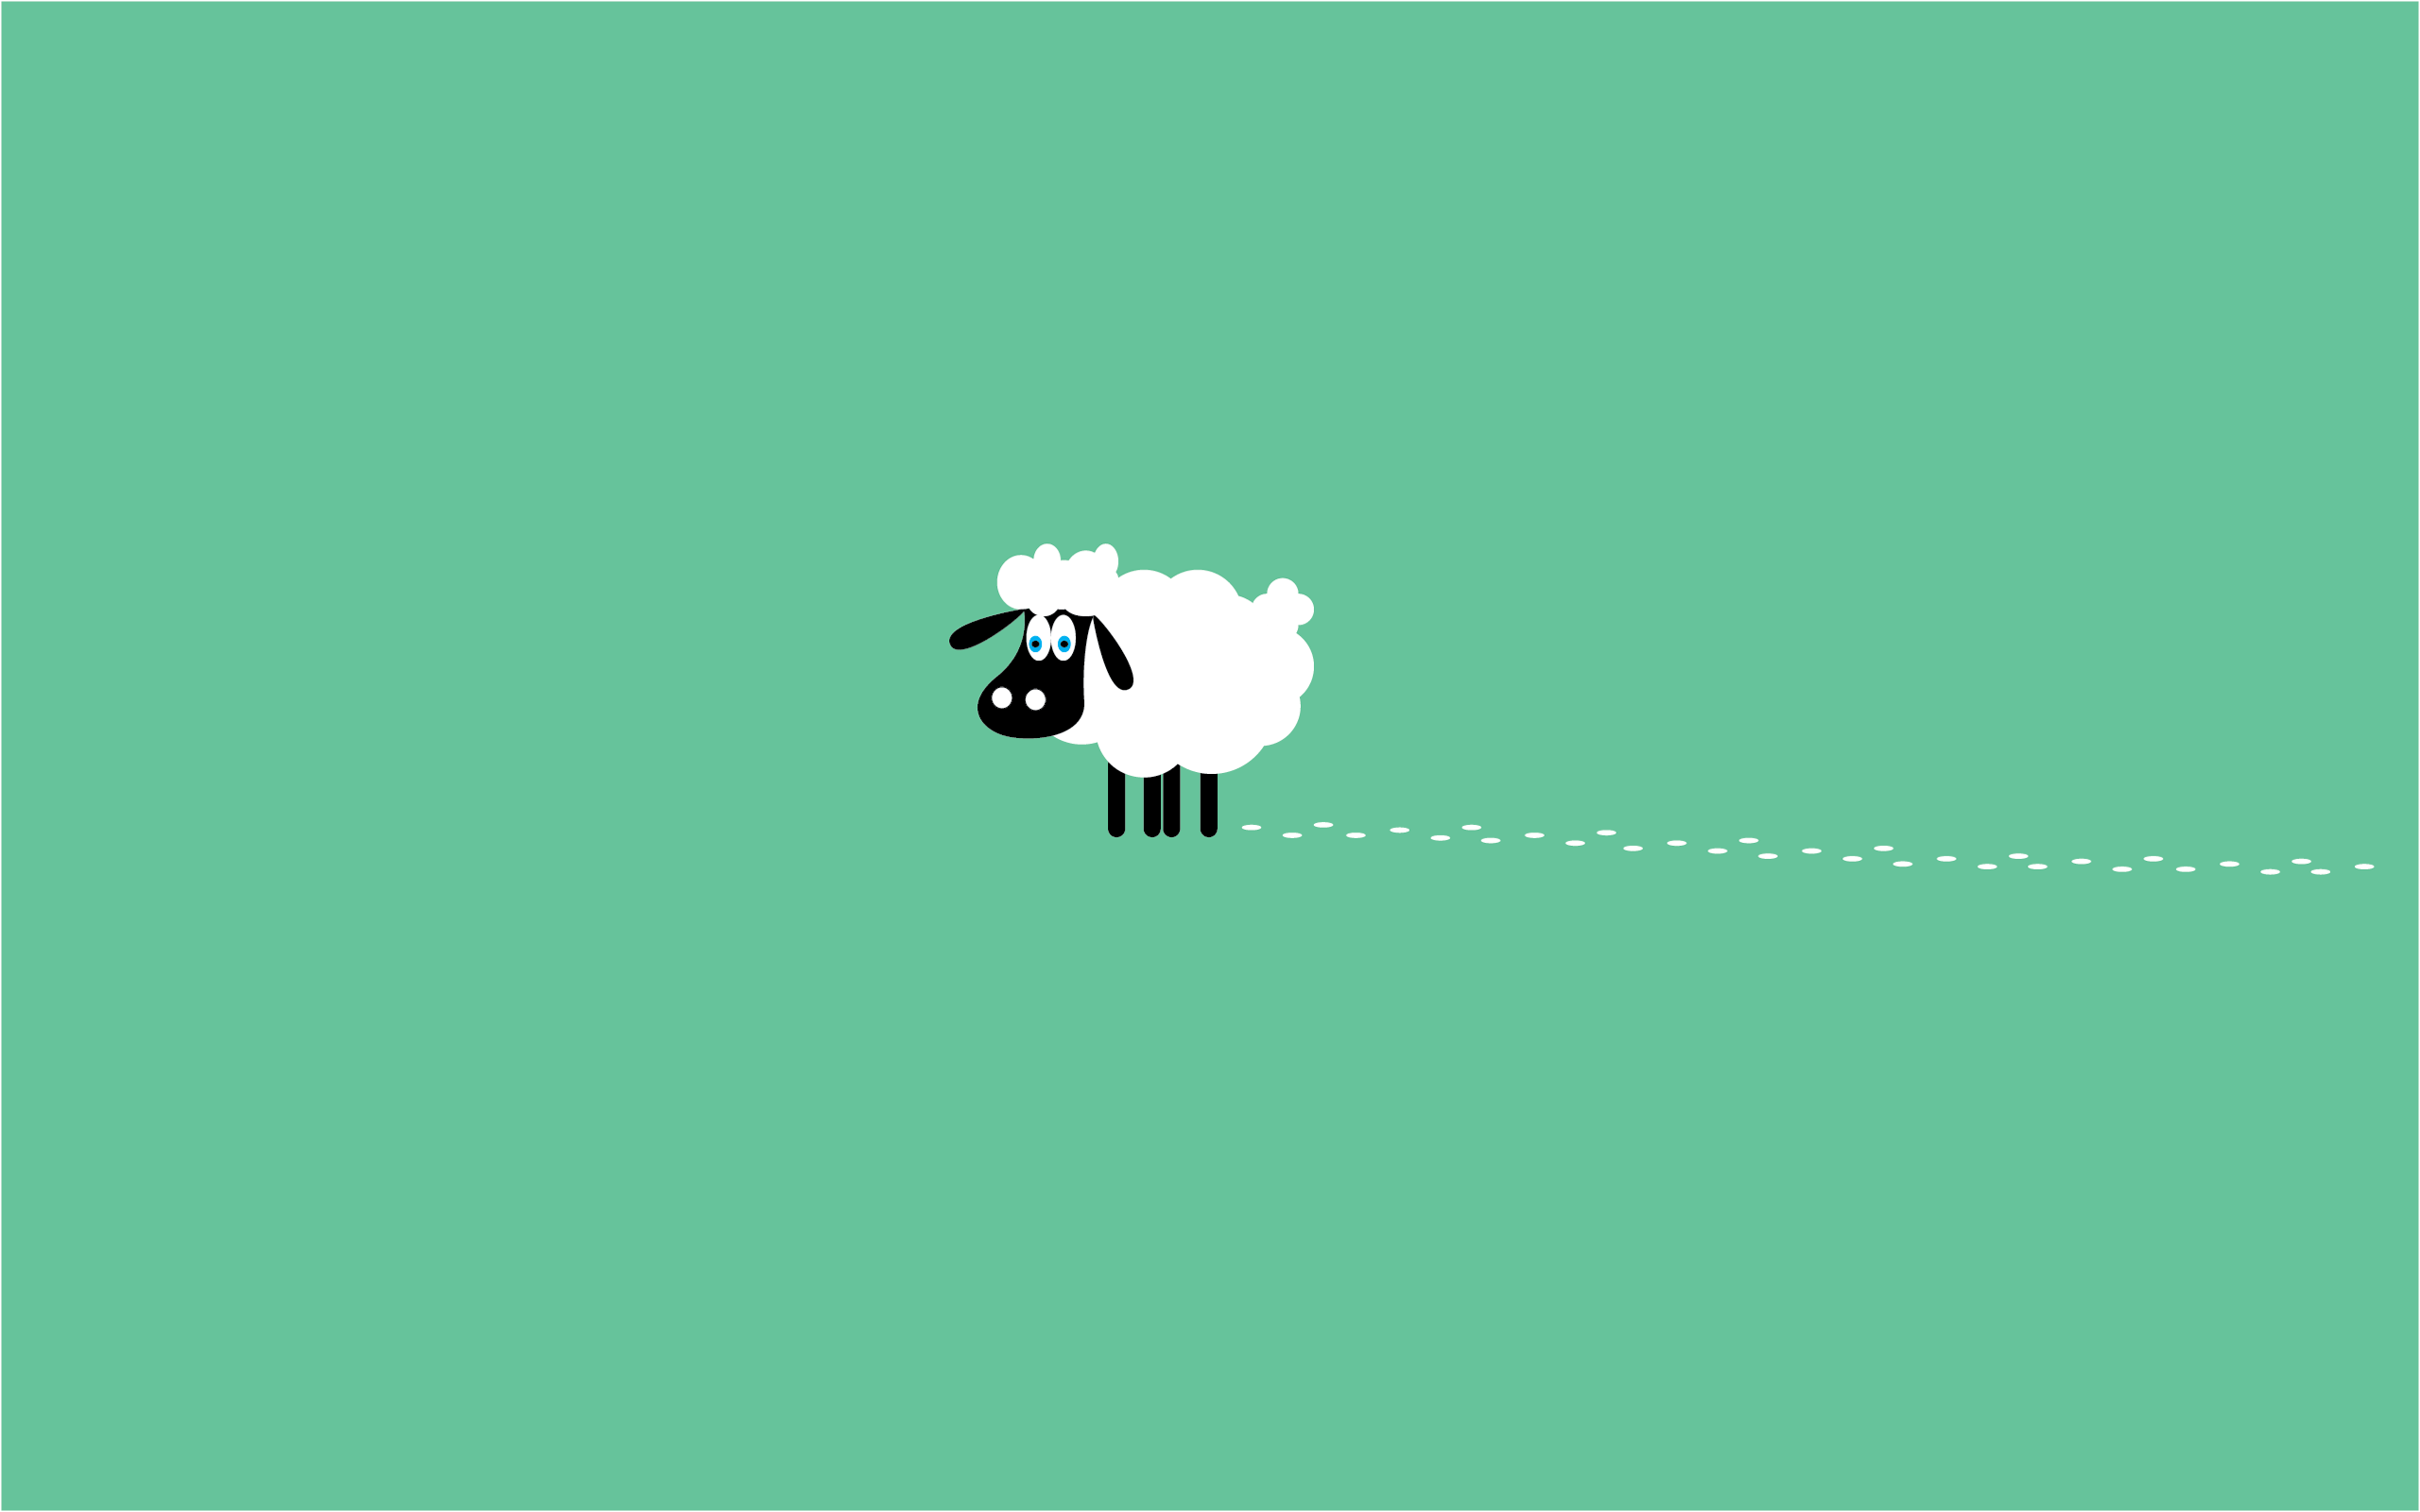 Sheep Wallpaper, Cartoon Wallpaper